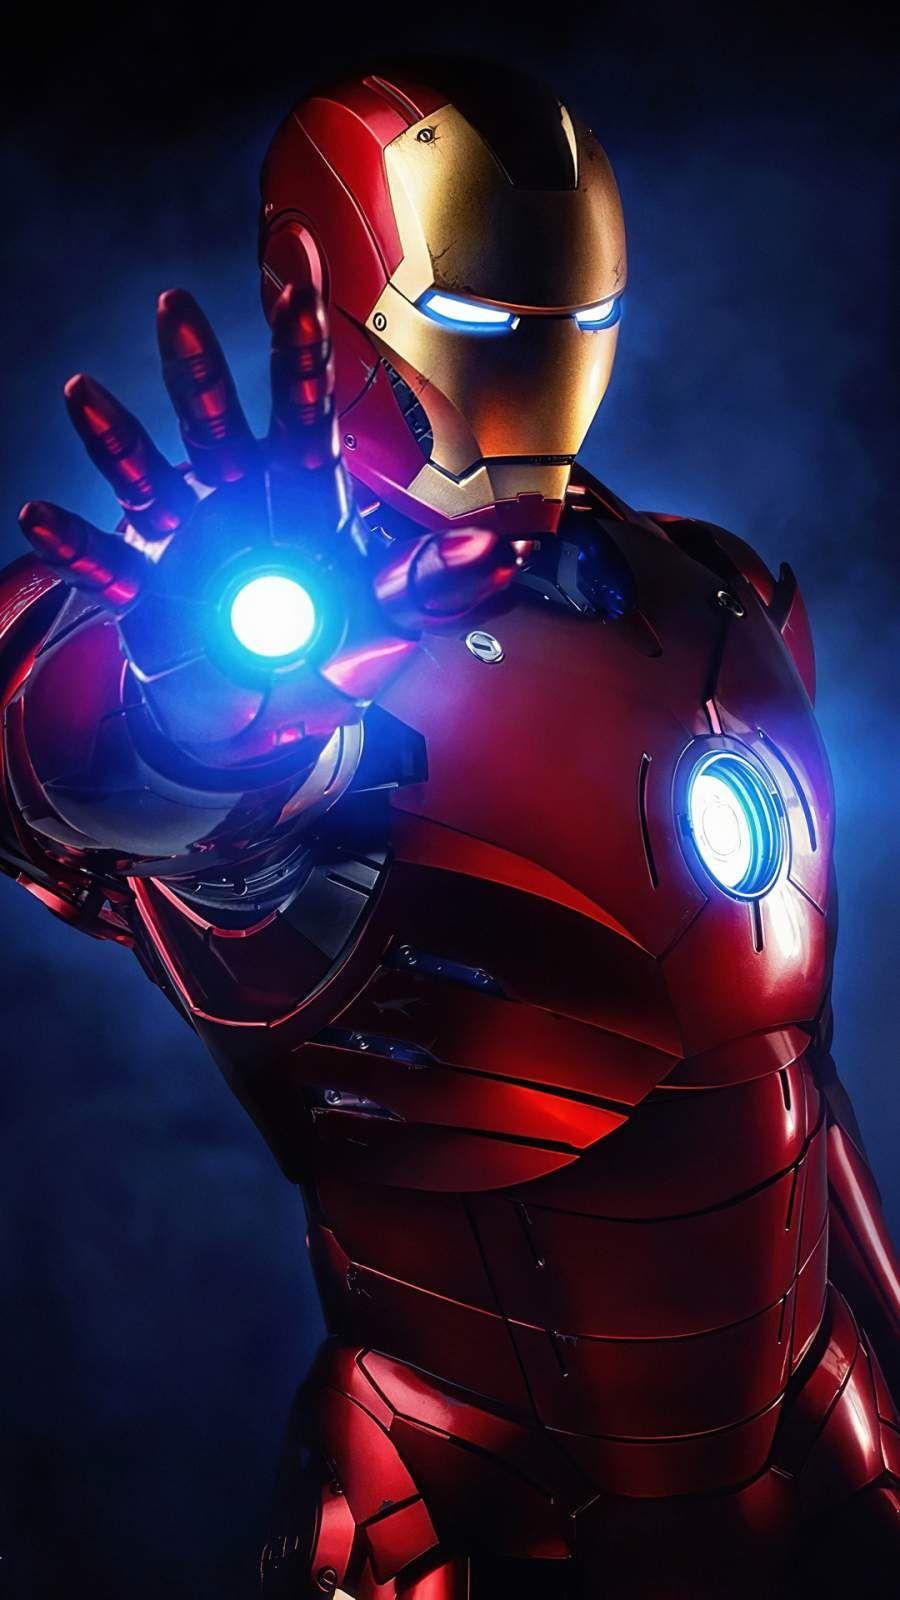 Thưởng thức hình nền Iron Man 4K với chất lượng hình ảnh sắc nét và thời gian đáp ứng nhanh chóng. Hình nền này sẽ mang đến cho bạn trải nghiệm tuyệt vời khi xem các hình ảnh chi tiết của Iron Man. Bạn sẽ không thể bỏ qua những bức ảnh nền tuyệt đẹp này.